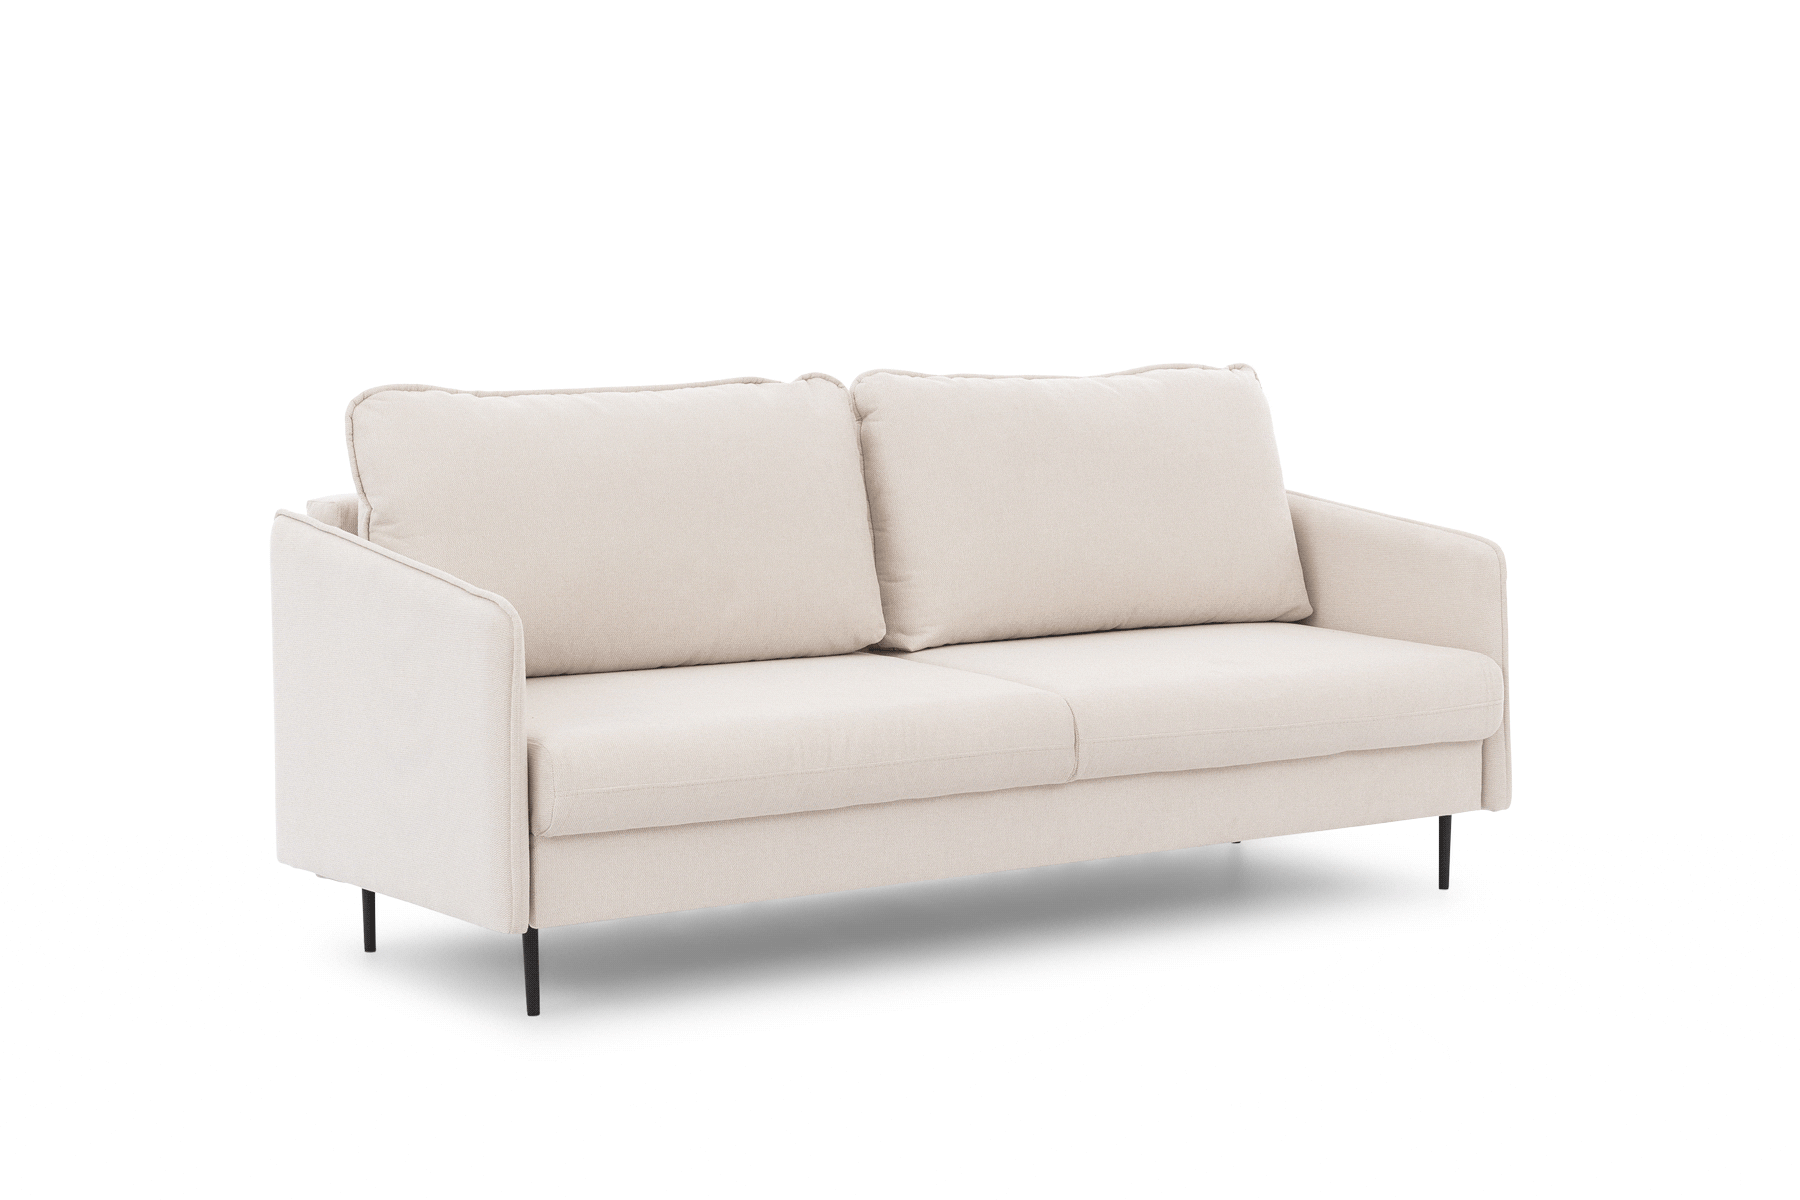 Taila kinyitható kanapé - Loft 01, fekete lábak  Taila kinyitható kanapé